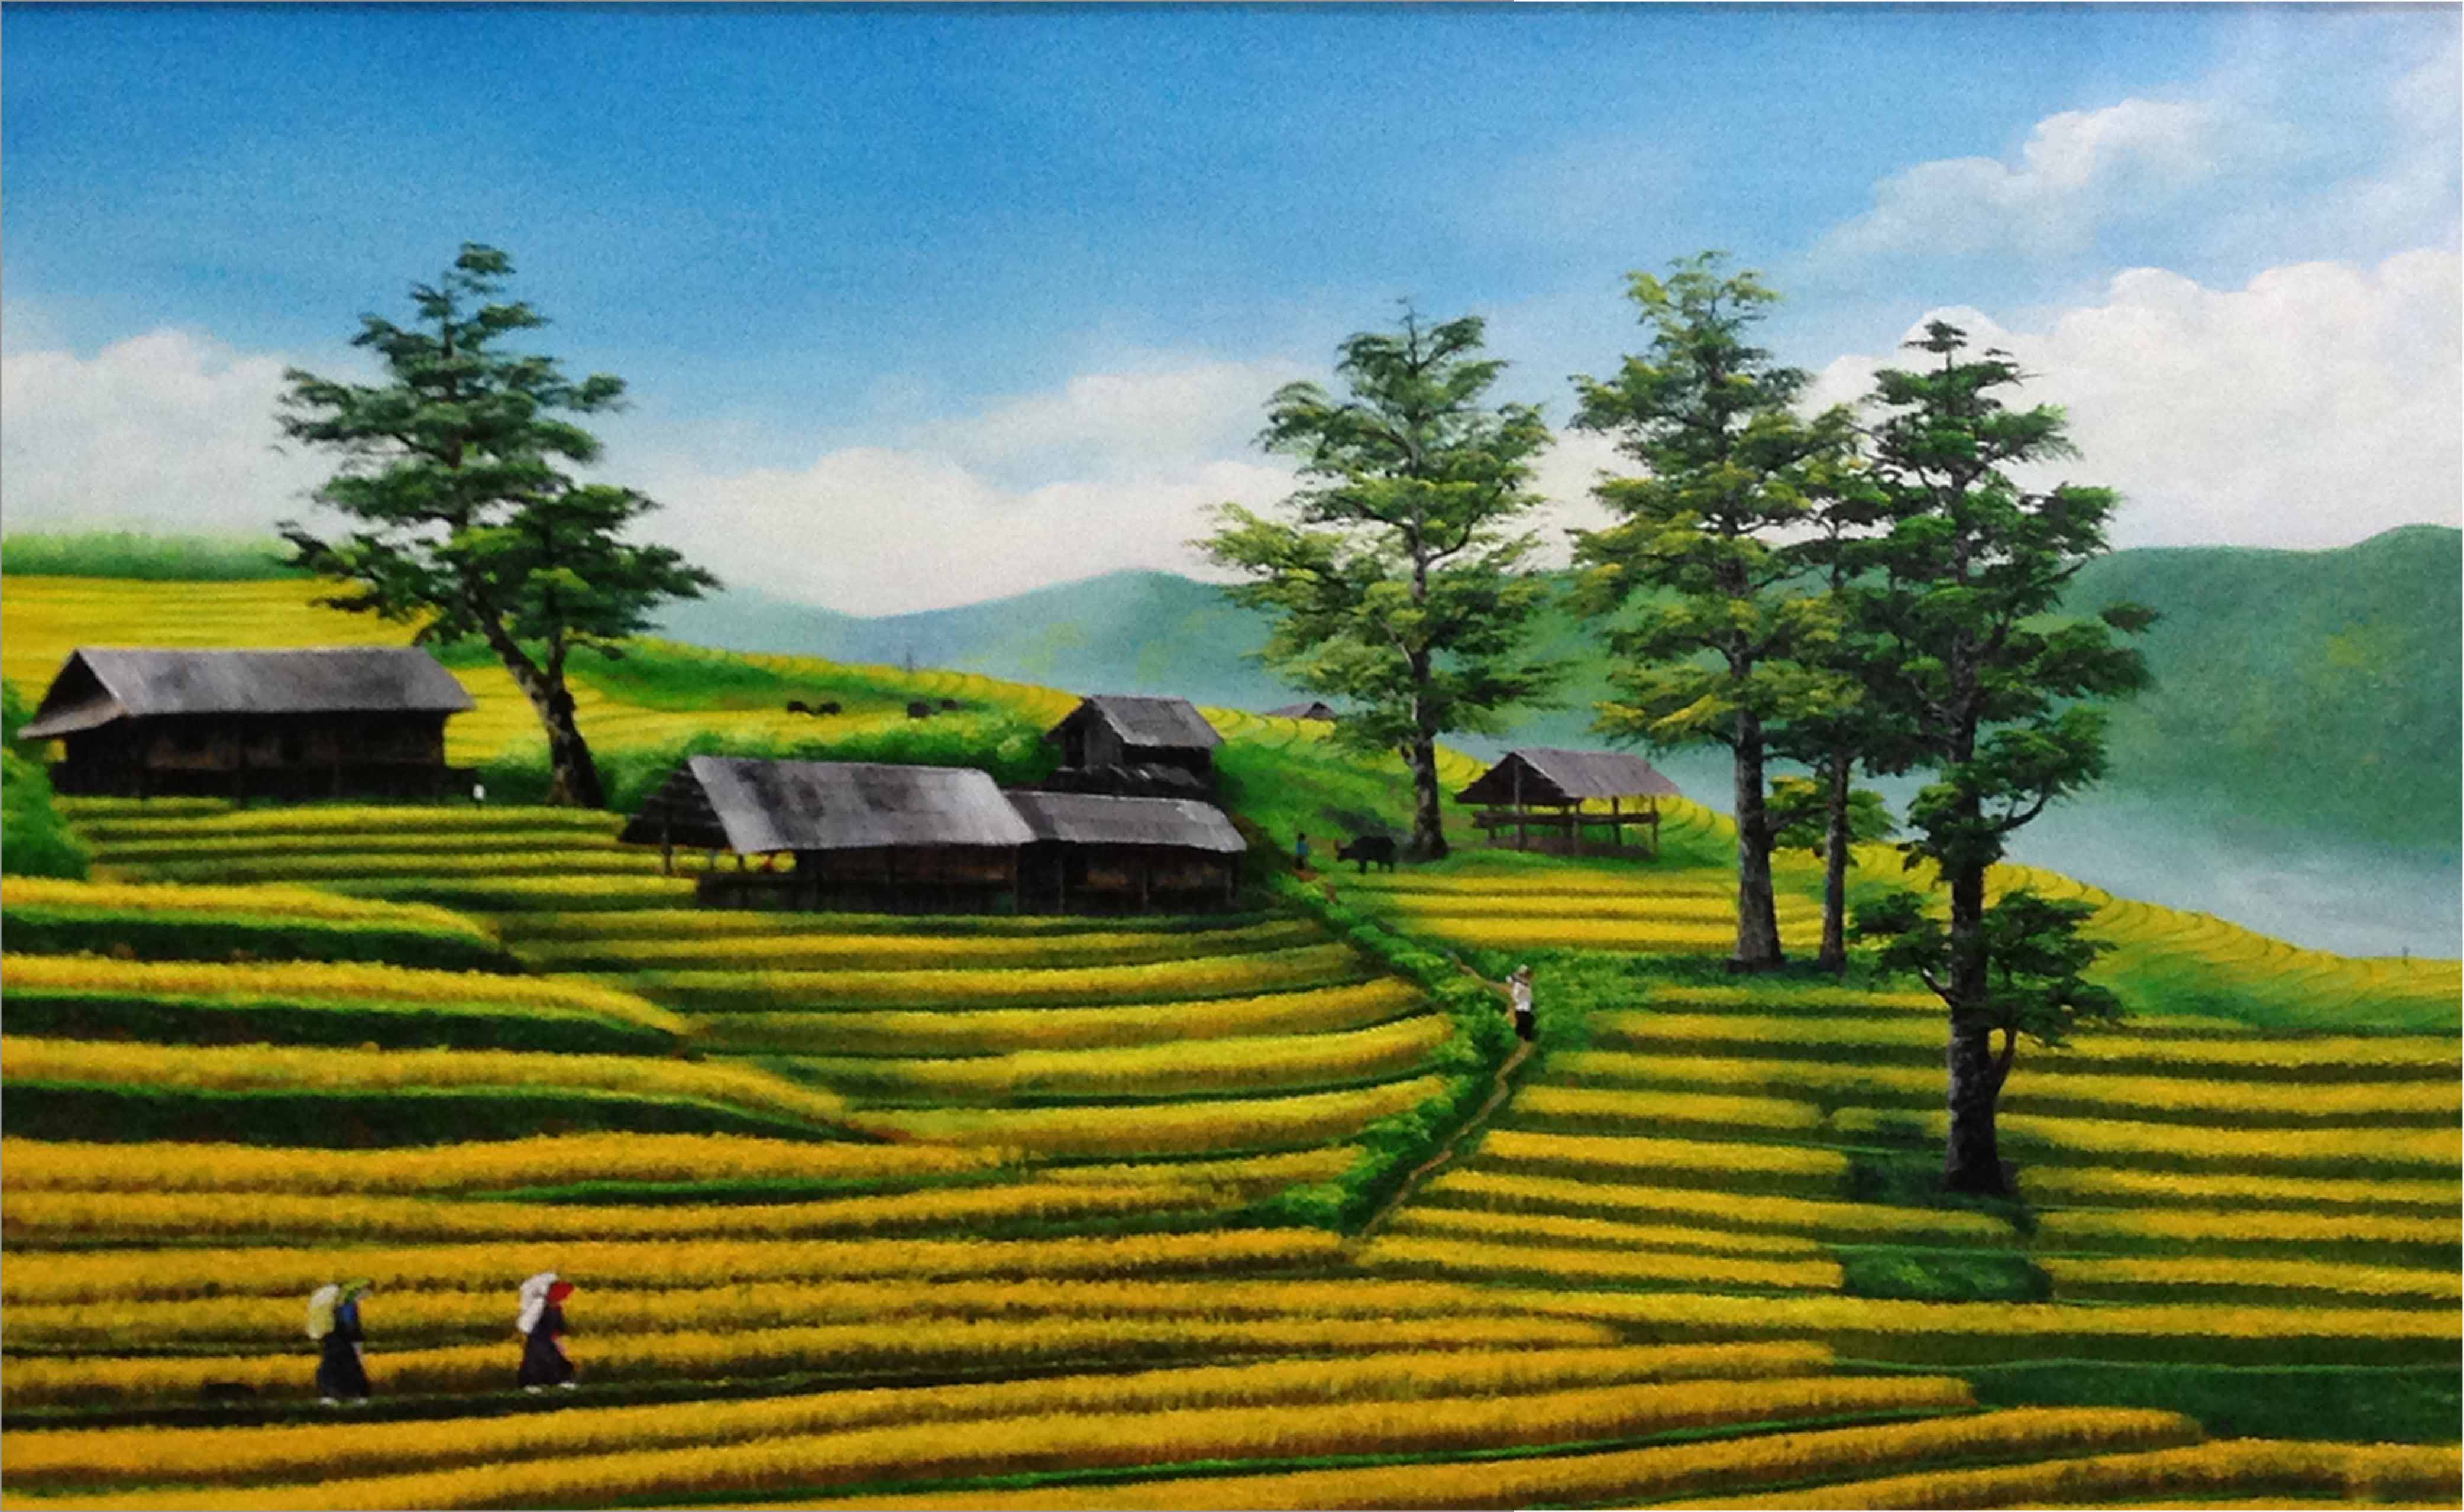 Tranh sơn dầu phong cảnh Tây Bắc Việt Nam - TSD281LHAR 6